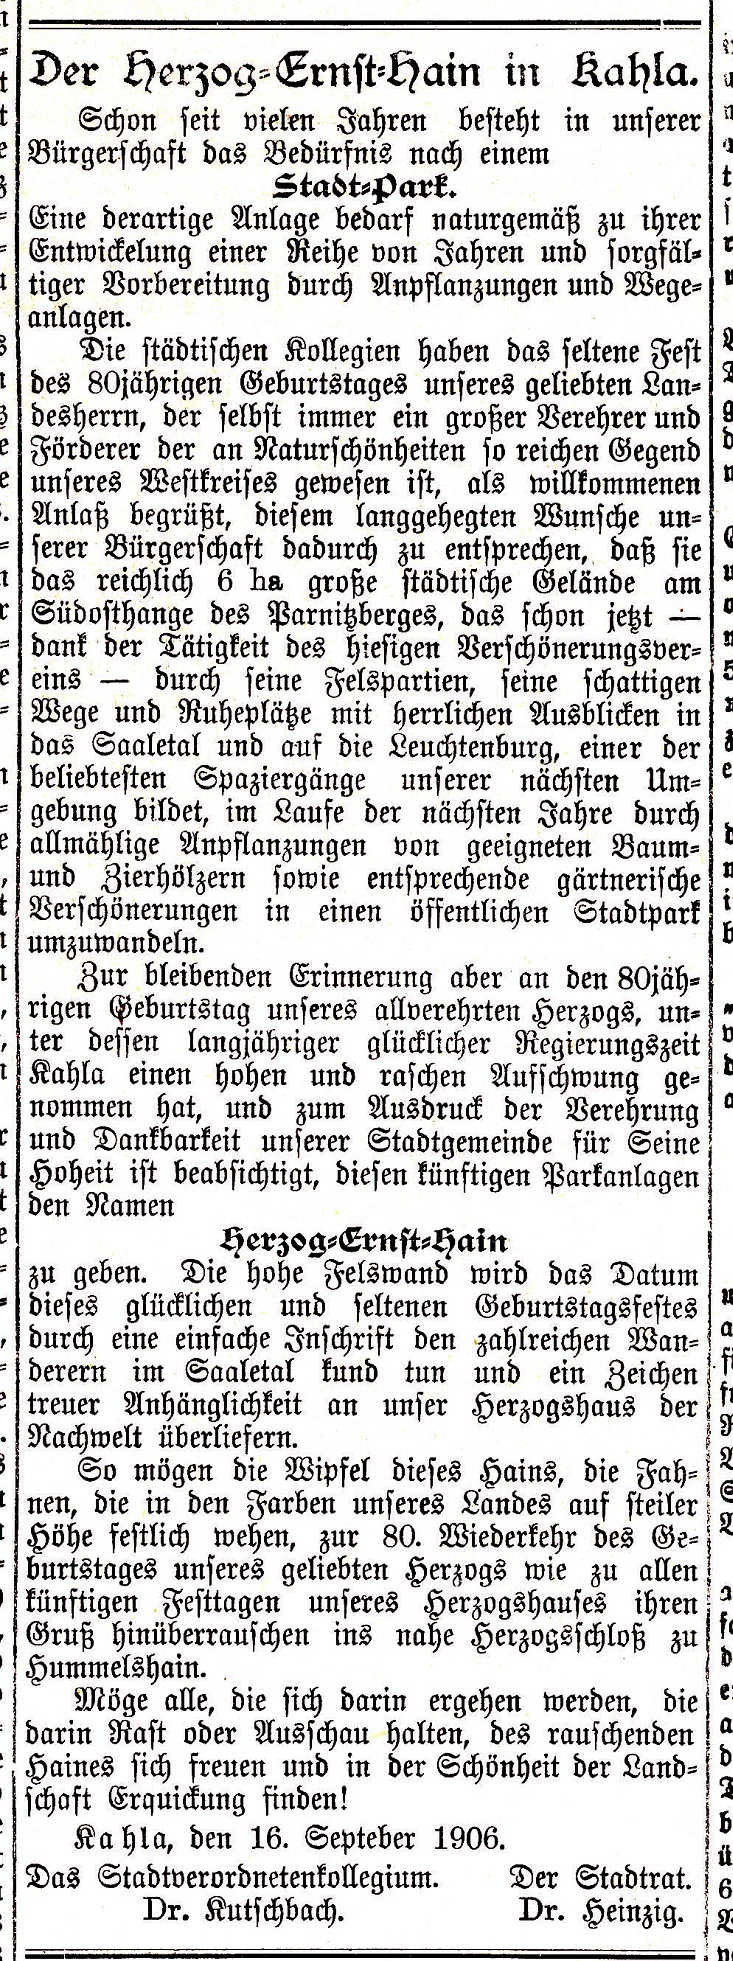 Originaldruck: Kahlaer Tageblatt vom 16. 9. 1906.